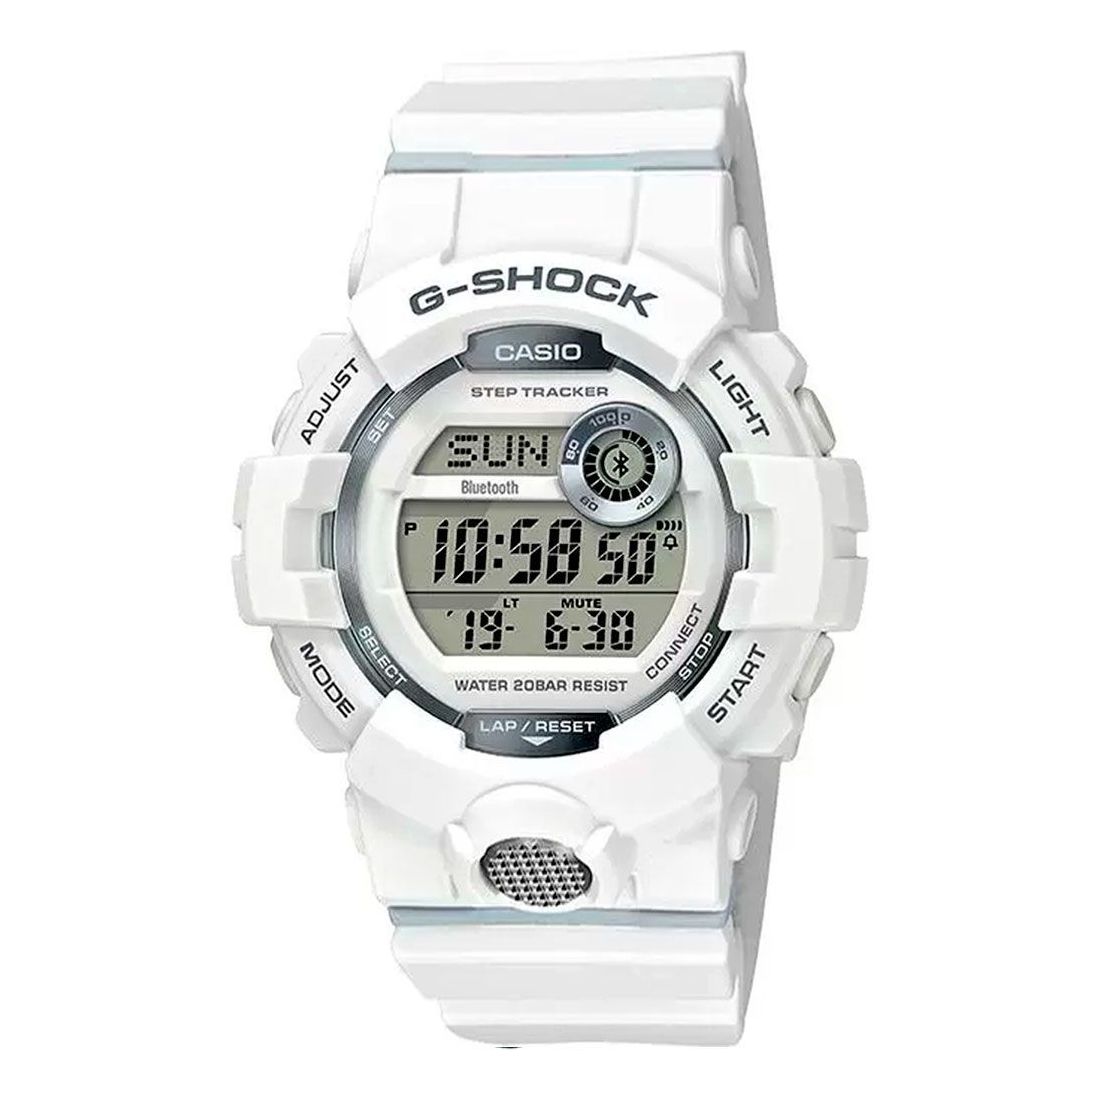 Casio G-Shock GBD-800-7DR Analog/Digital Watch